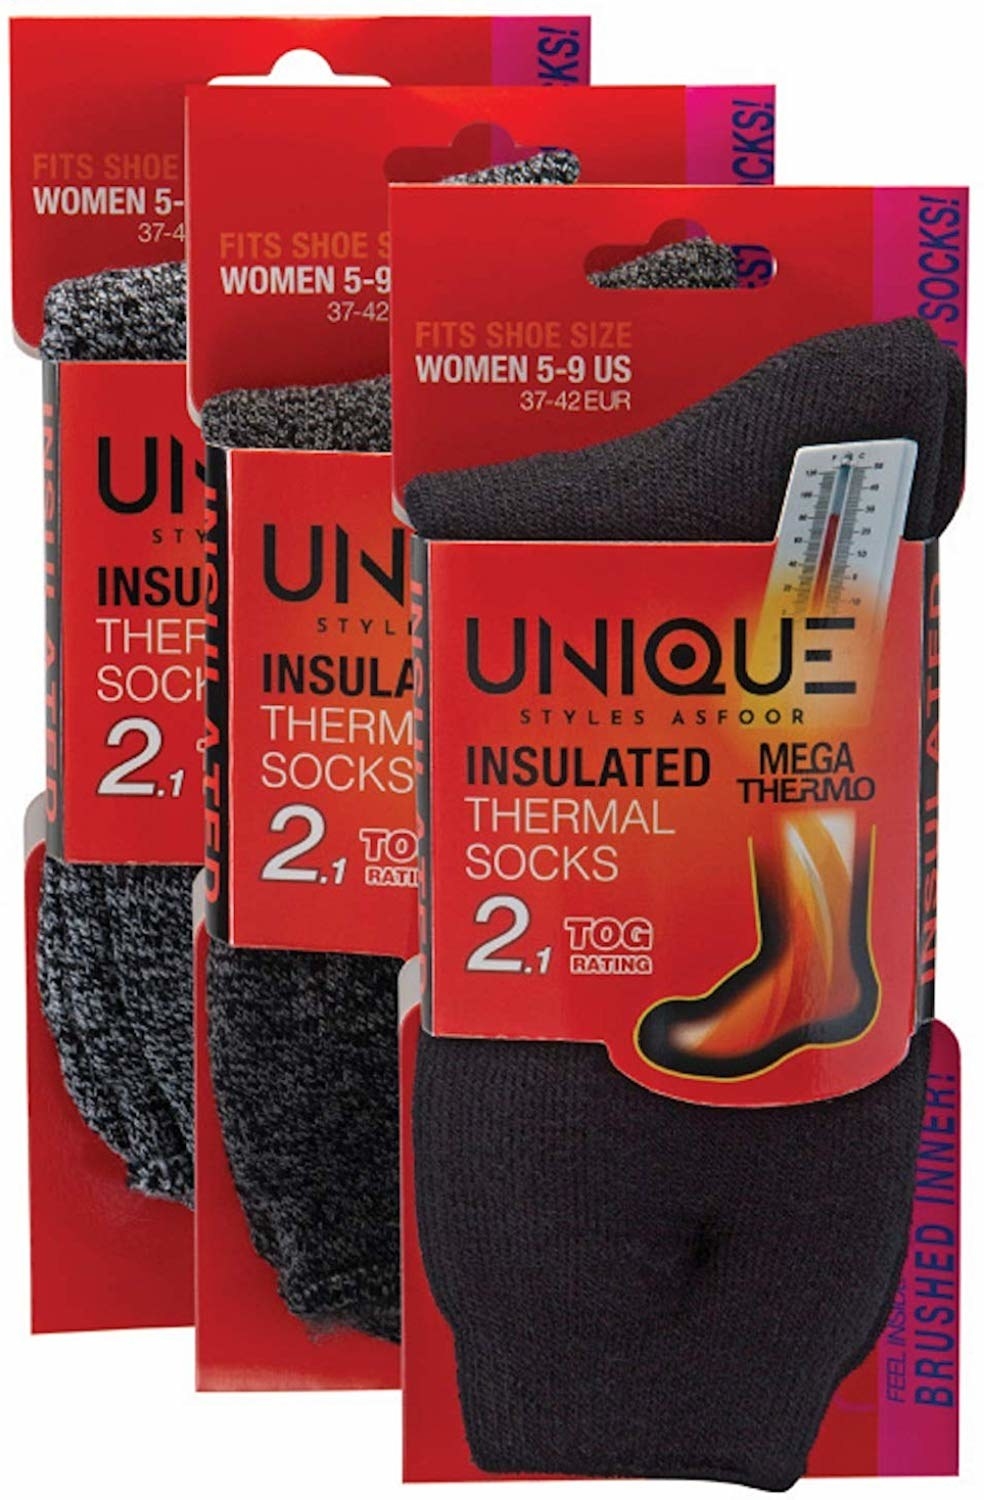 The three pairs of socks: black, dark grey and black heather, and lighter grey and black heather